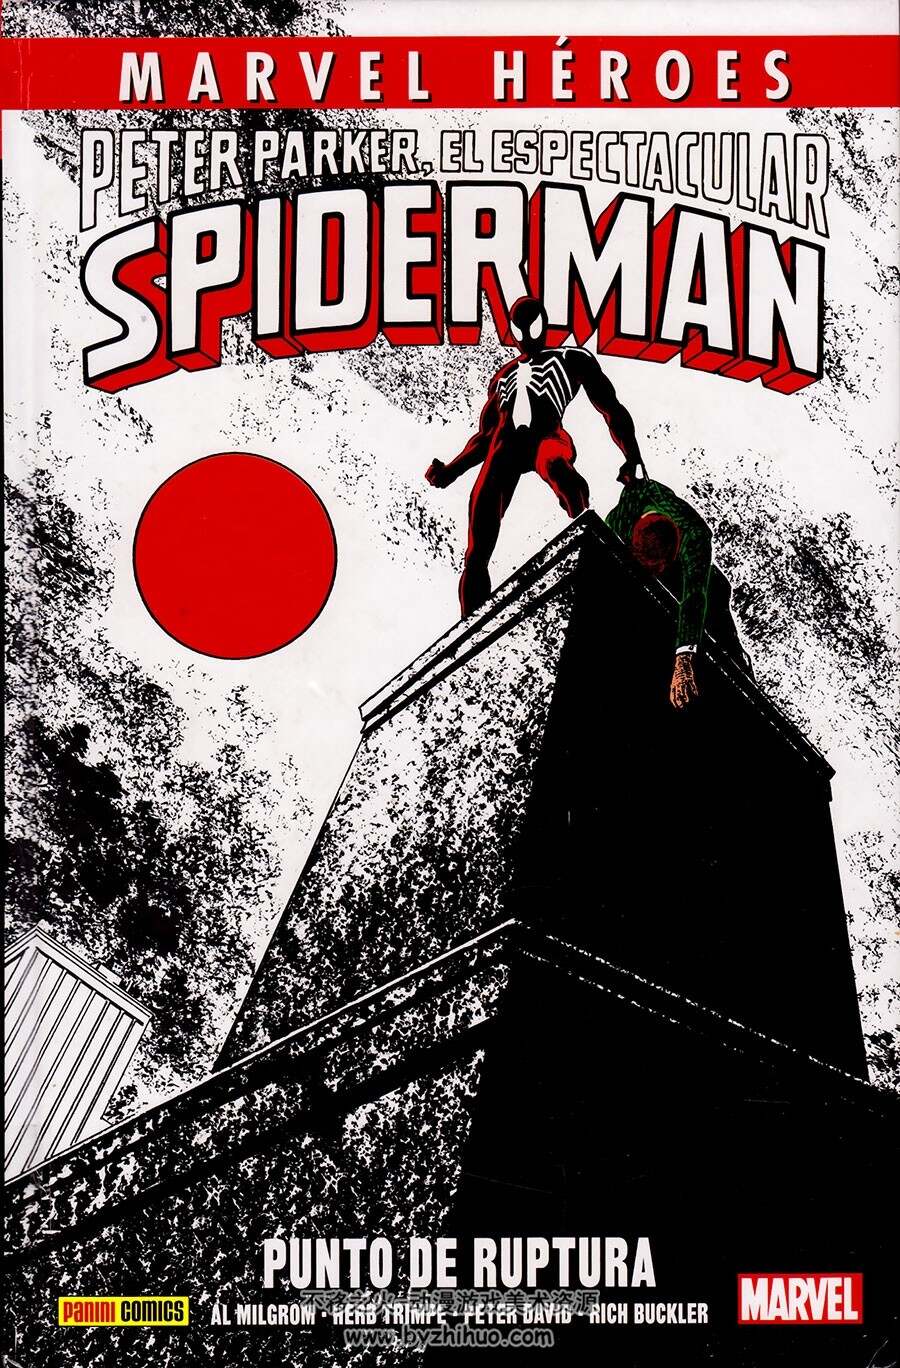 Peter Parker, El Espectacular Spiderman - Punto de ruptura 全一册 蜘蛛侠漫画下载